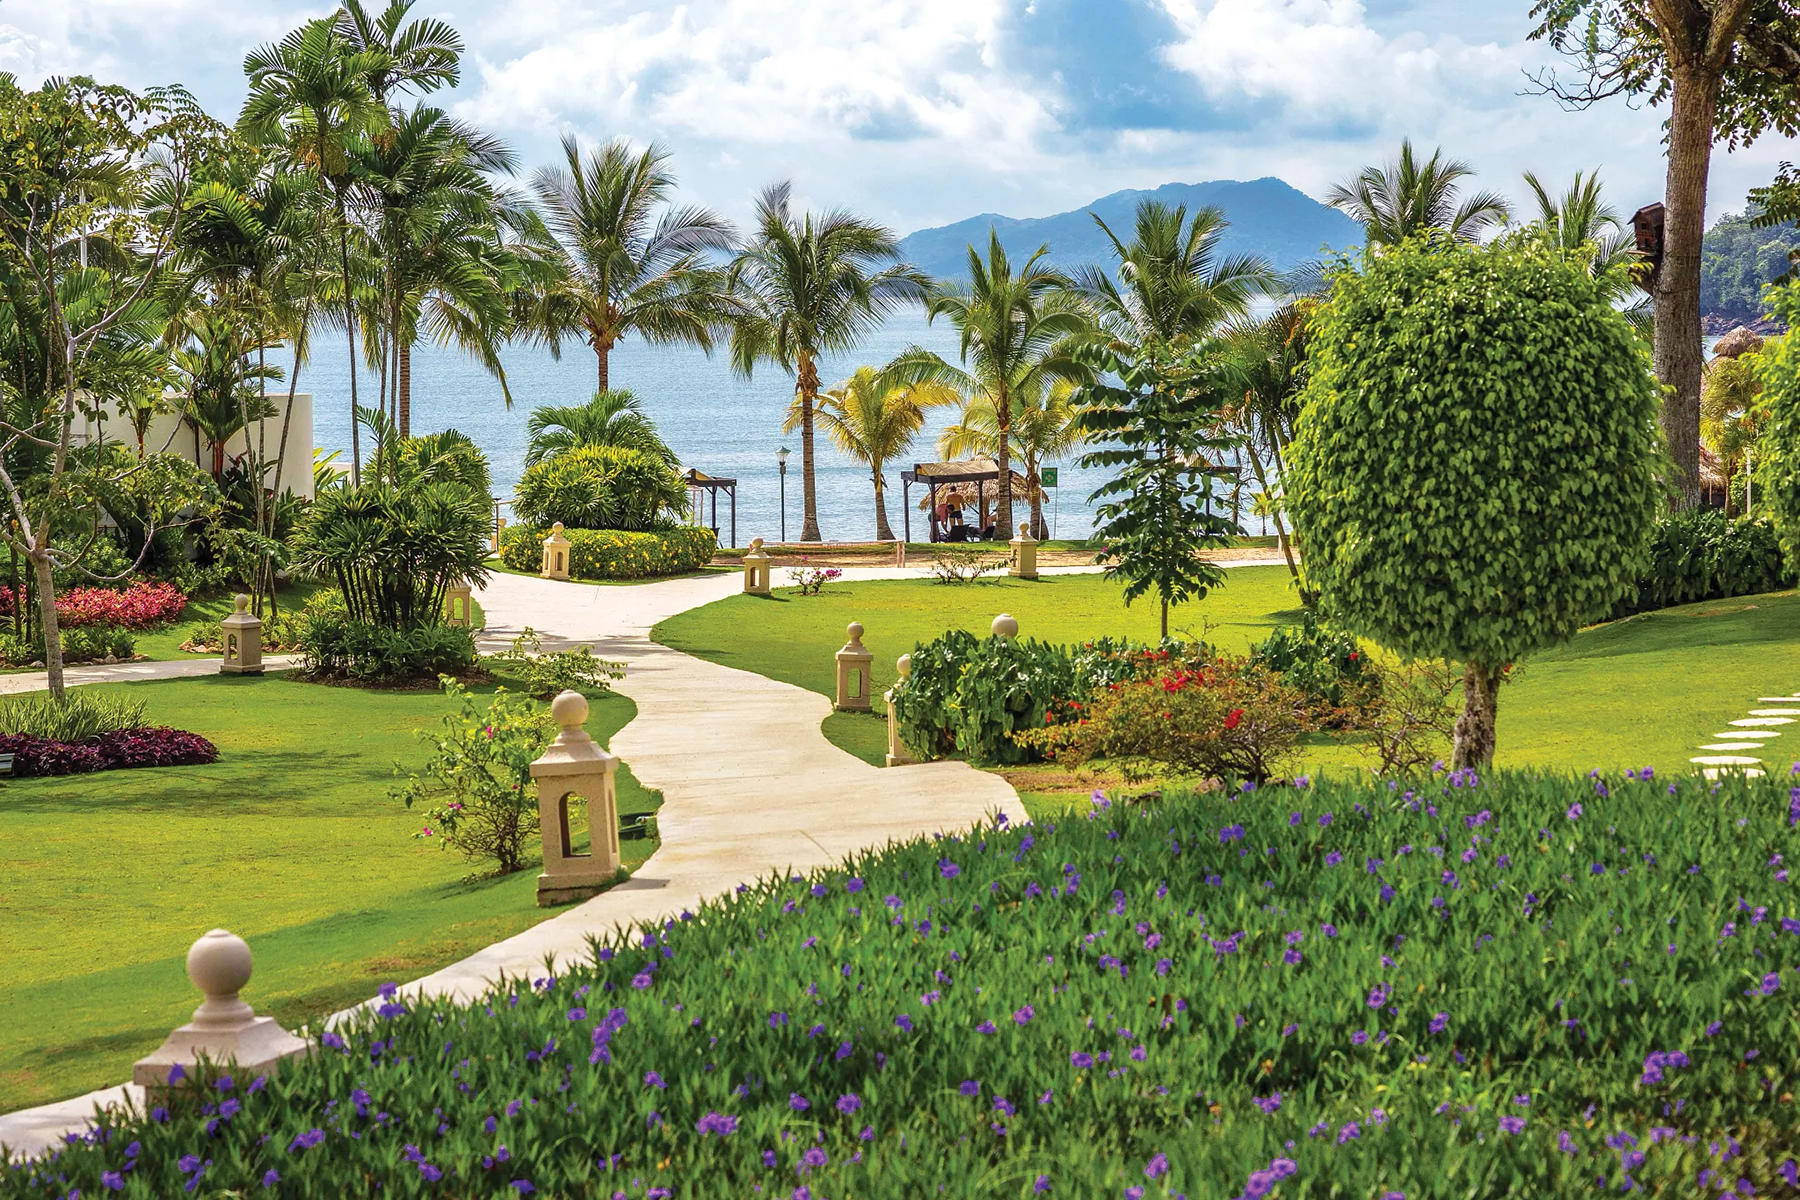 Luxury Playa Bonita Panama All-Inclusive Oceanfront Resort